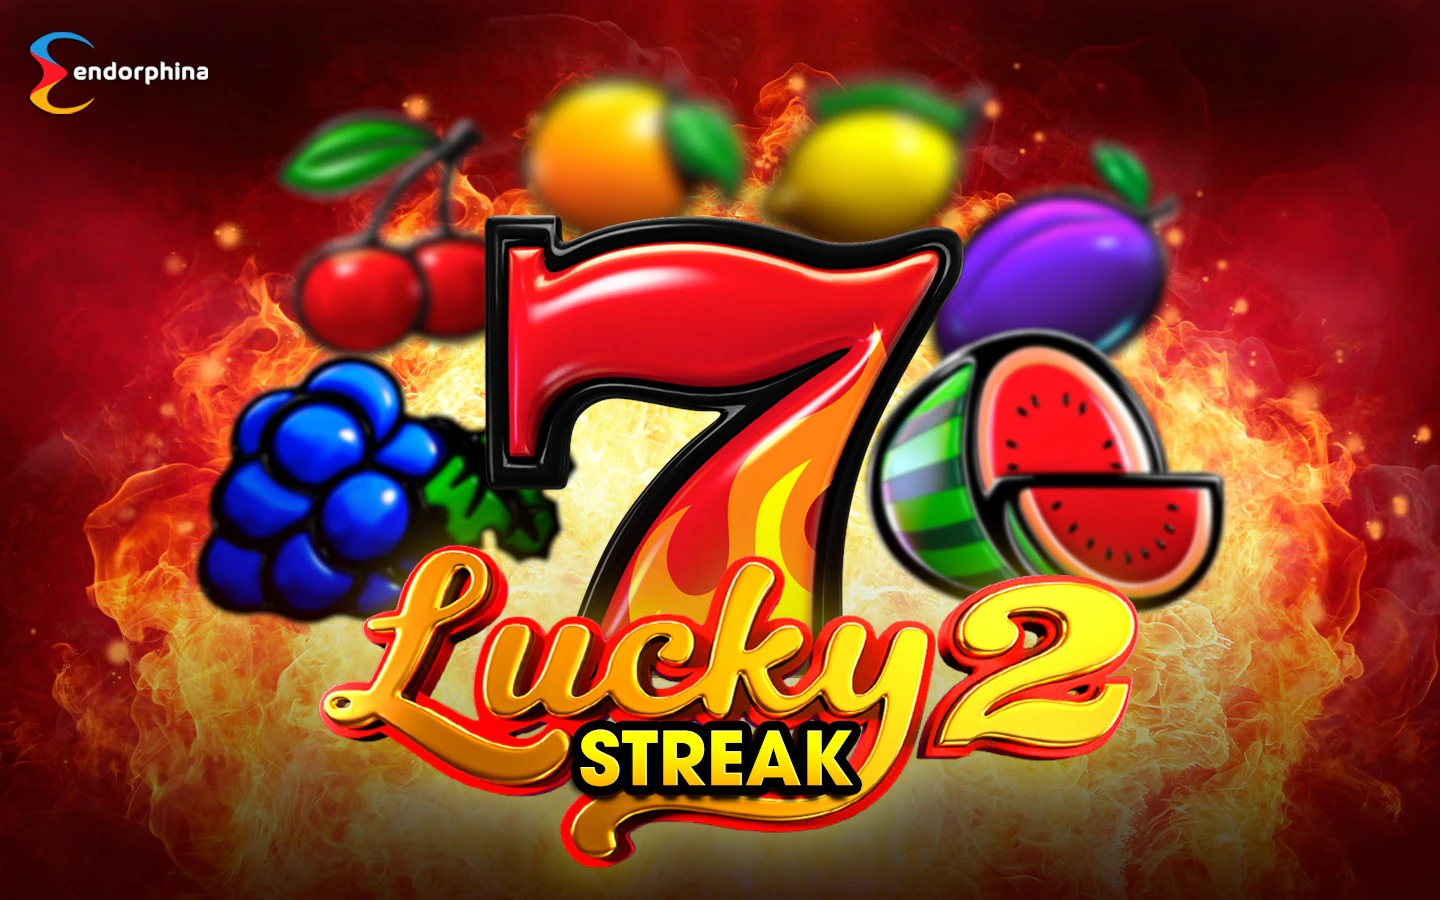 Lucky Streak 2